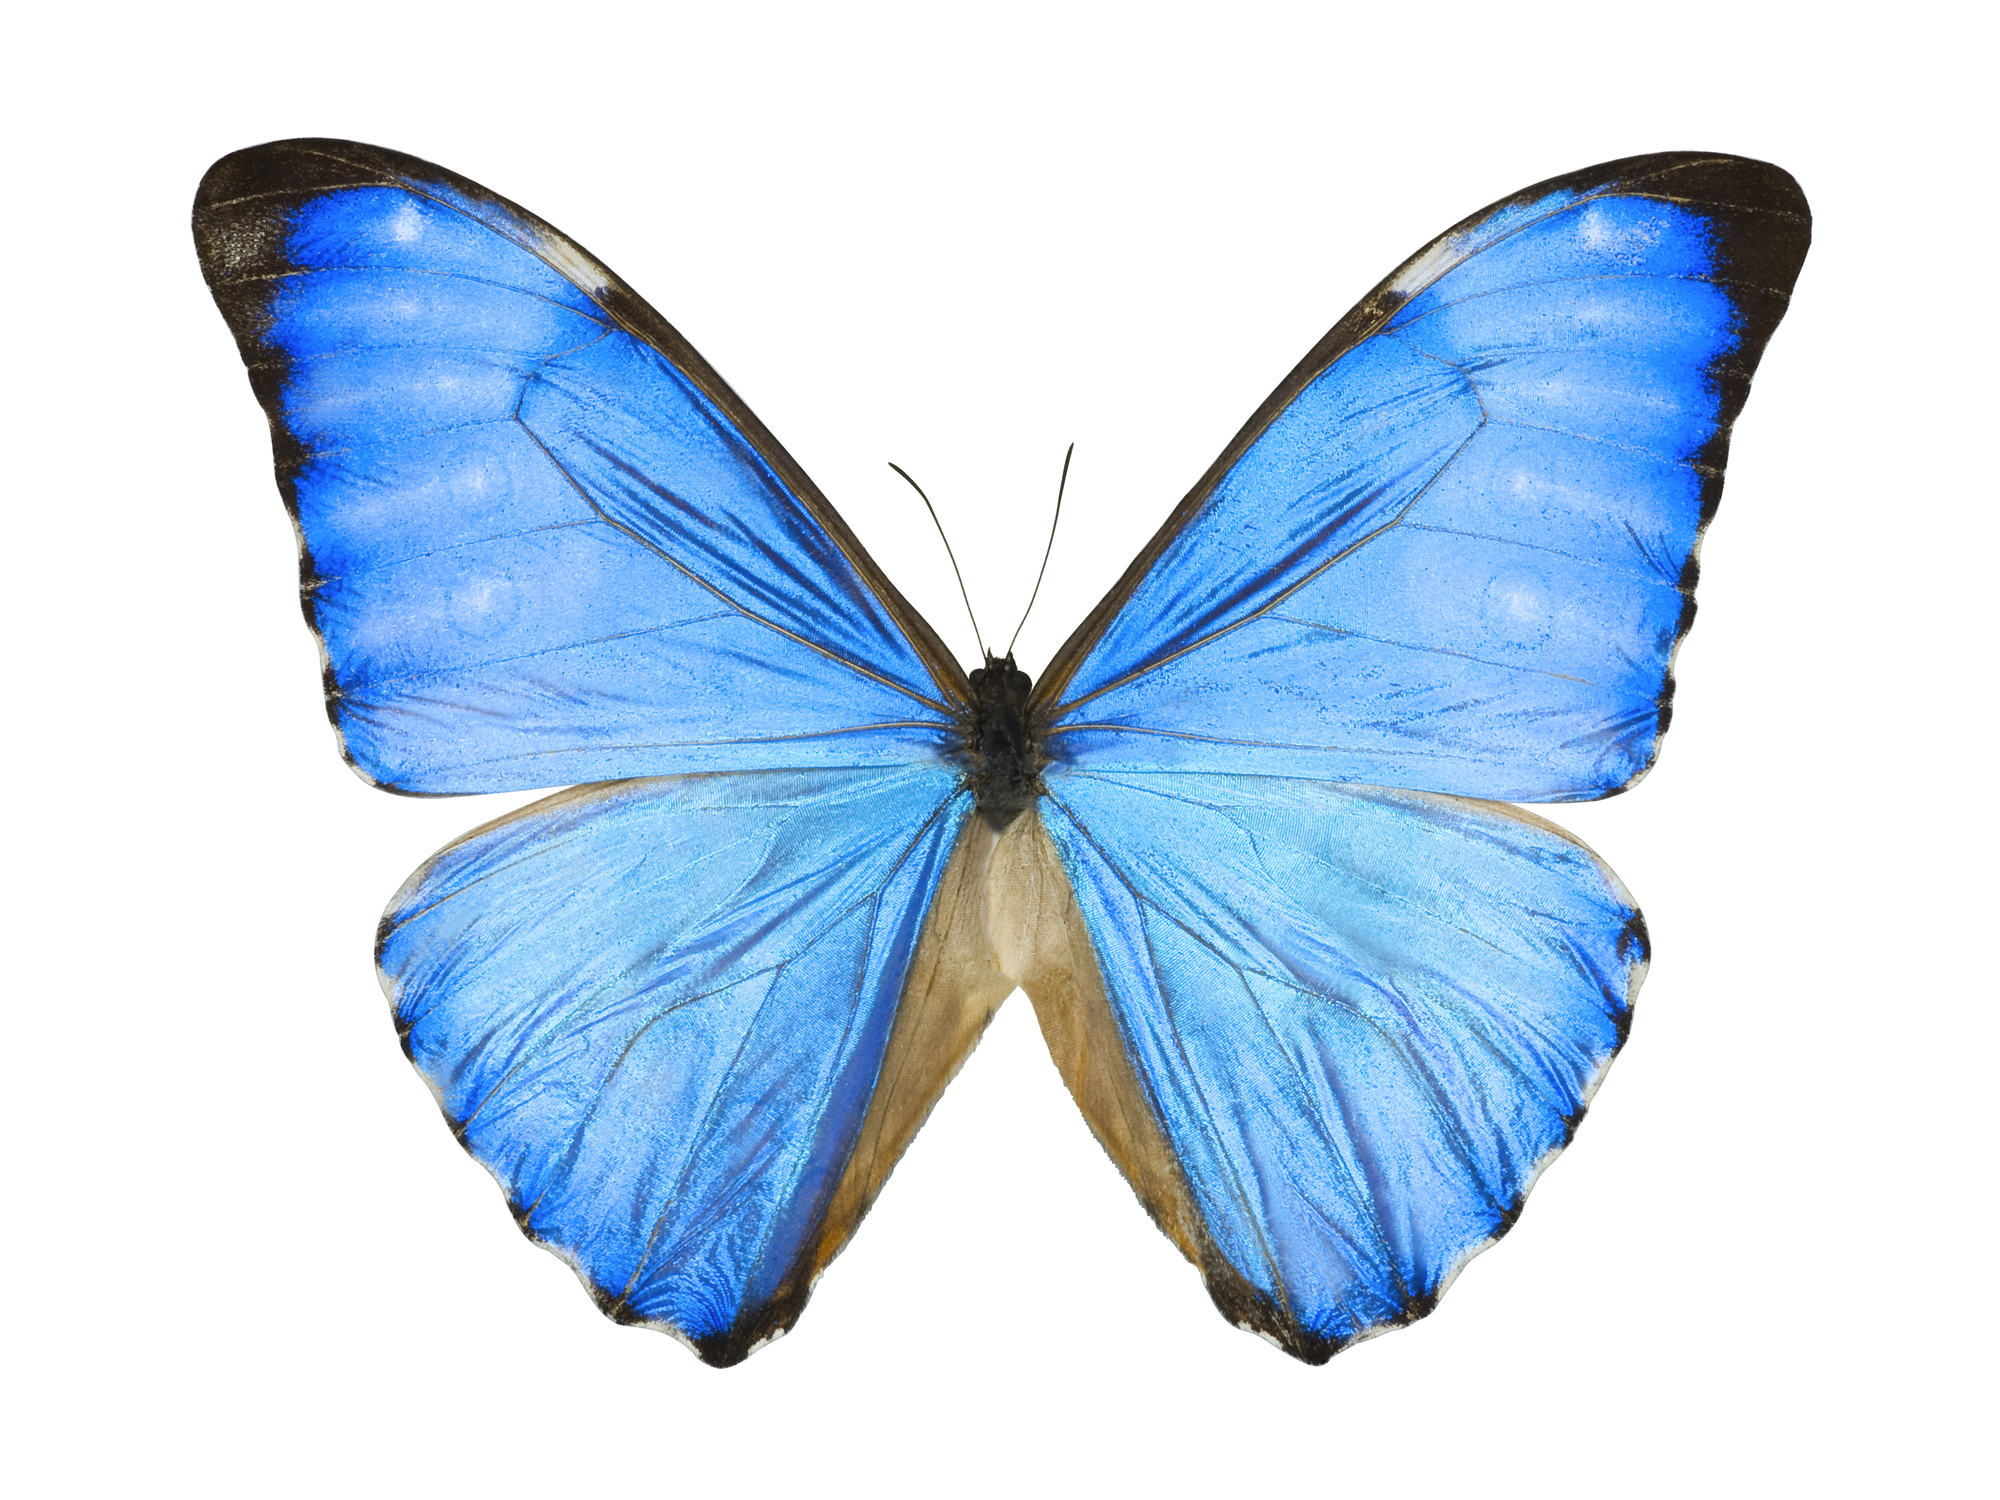 モルフォ蝶をヒントに微細構造を工夫 大阪大学が新しい採光窓発案 大学ジャーナルオンライン